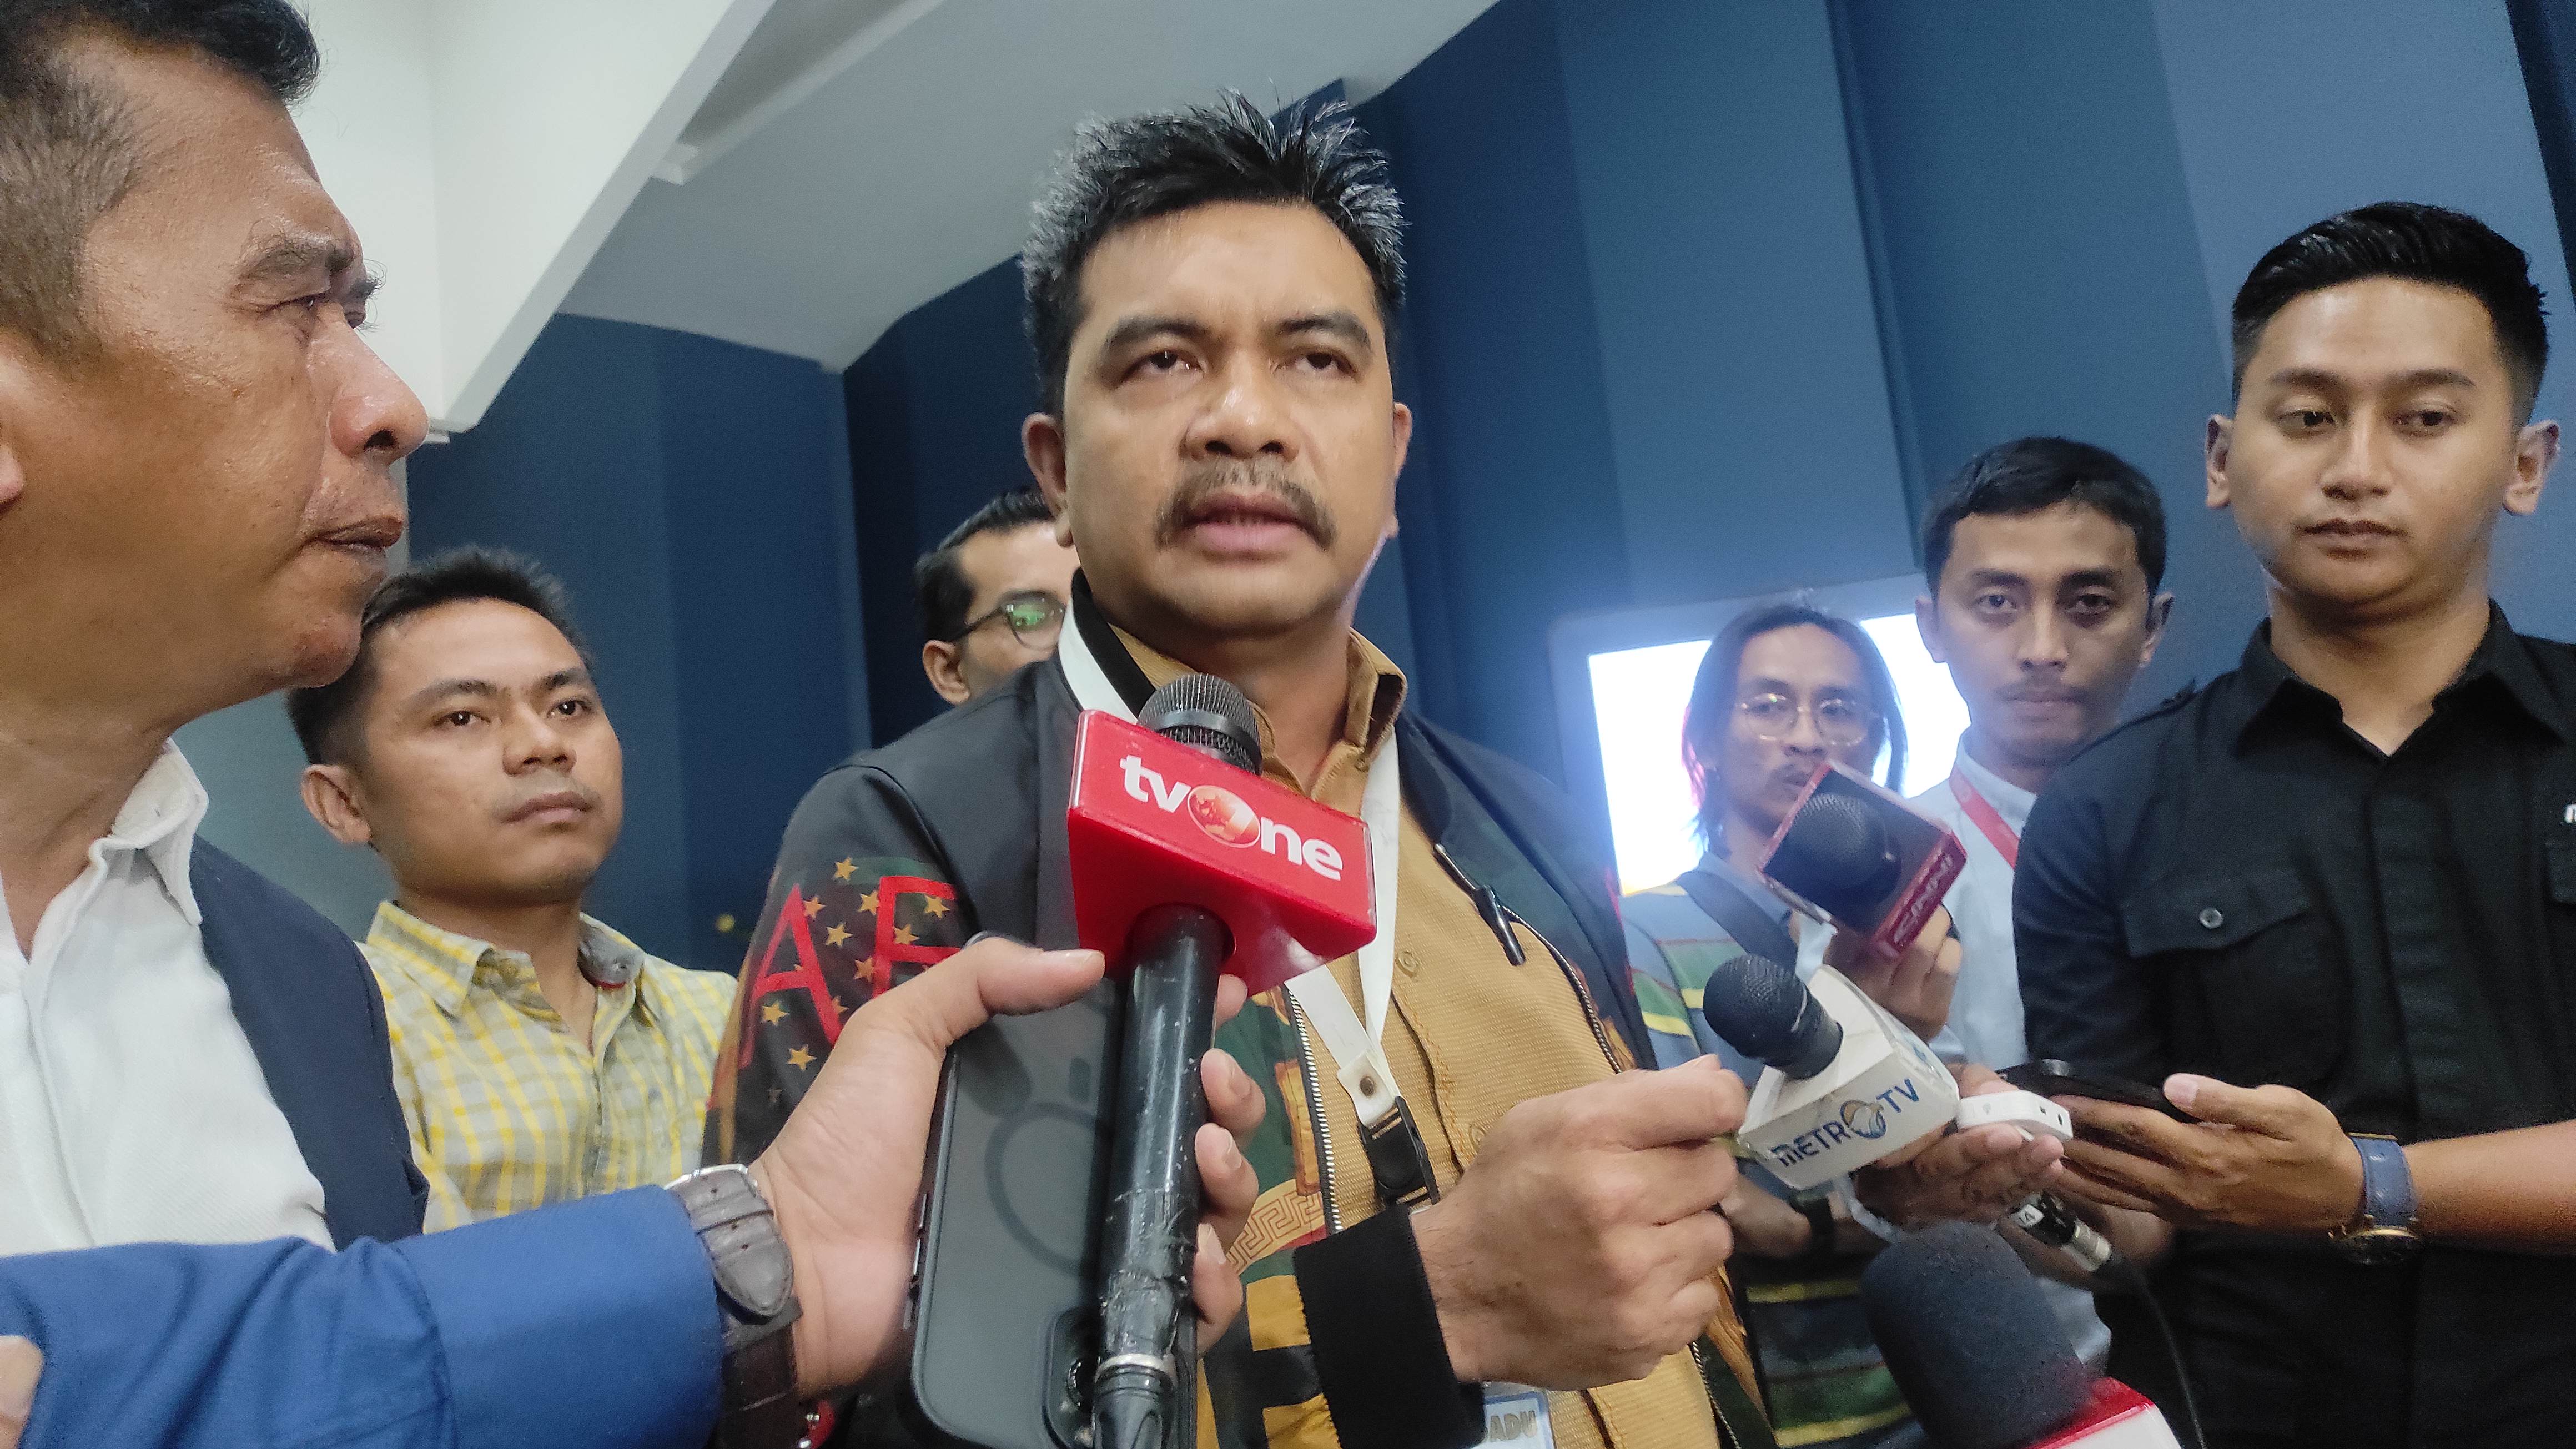 Kuasa Hukum Hasnaeni Minta Hasyim Asy'ari Mundur dari Ketua KPU RI